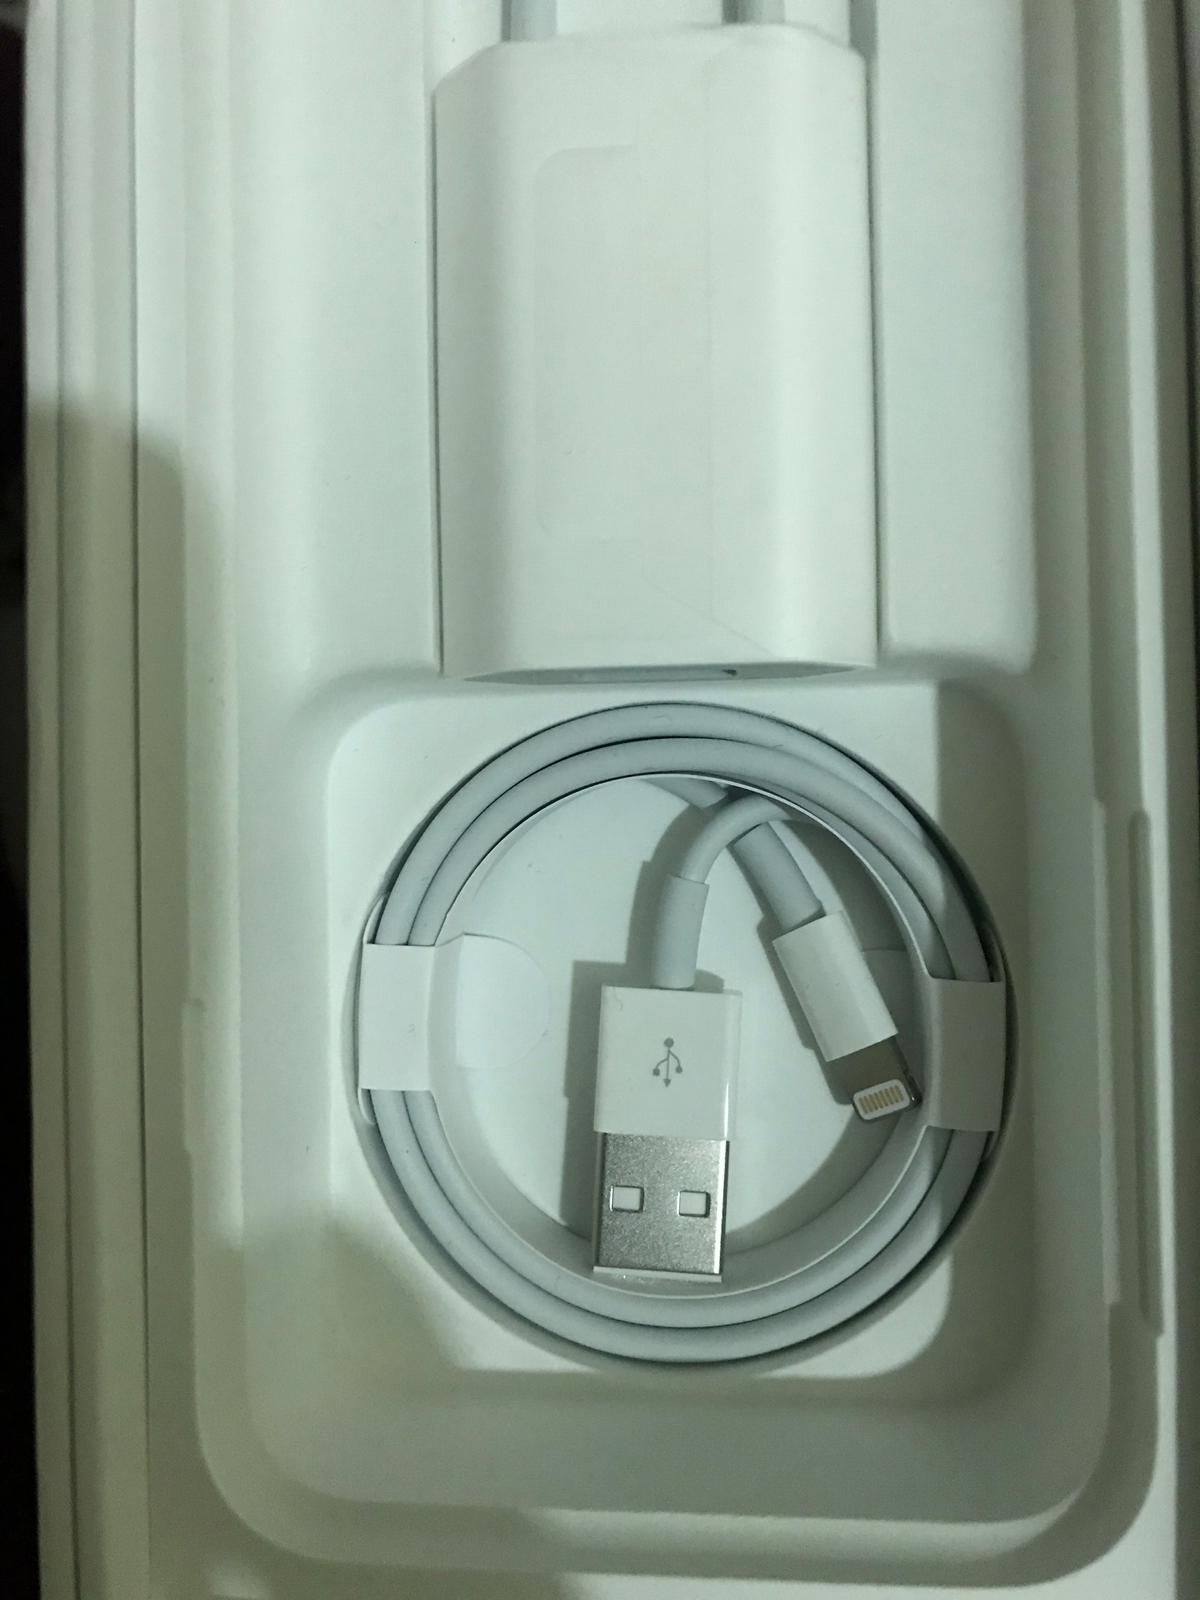 SIFIR iPhone 7 kutusundan 2 Apple Adaptör, 2 Earpods kulaklık 1 Lightning Kablo. Adet 40 TL